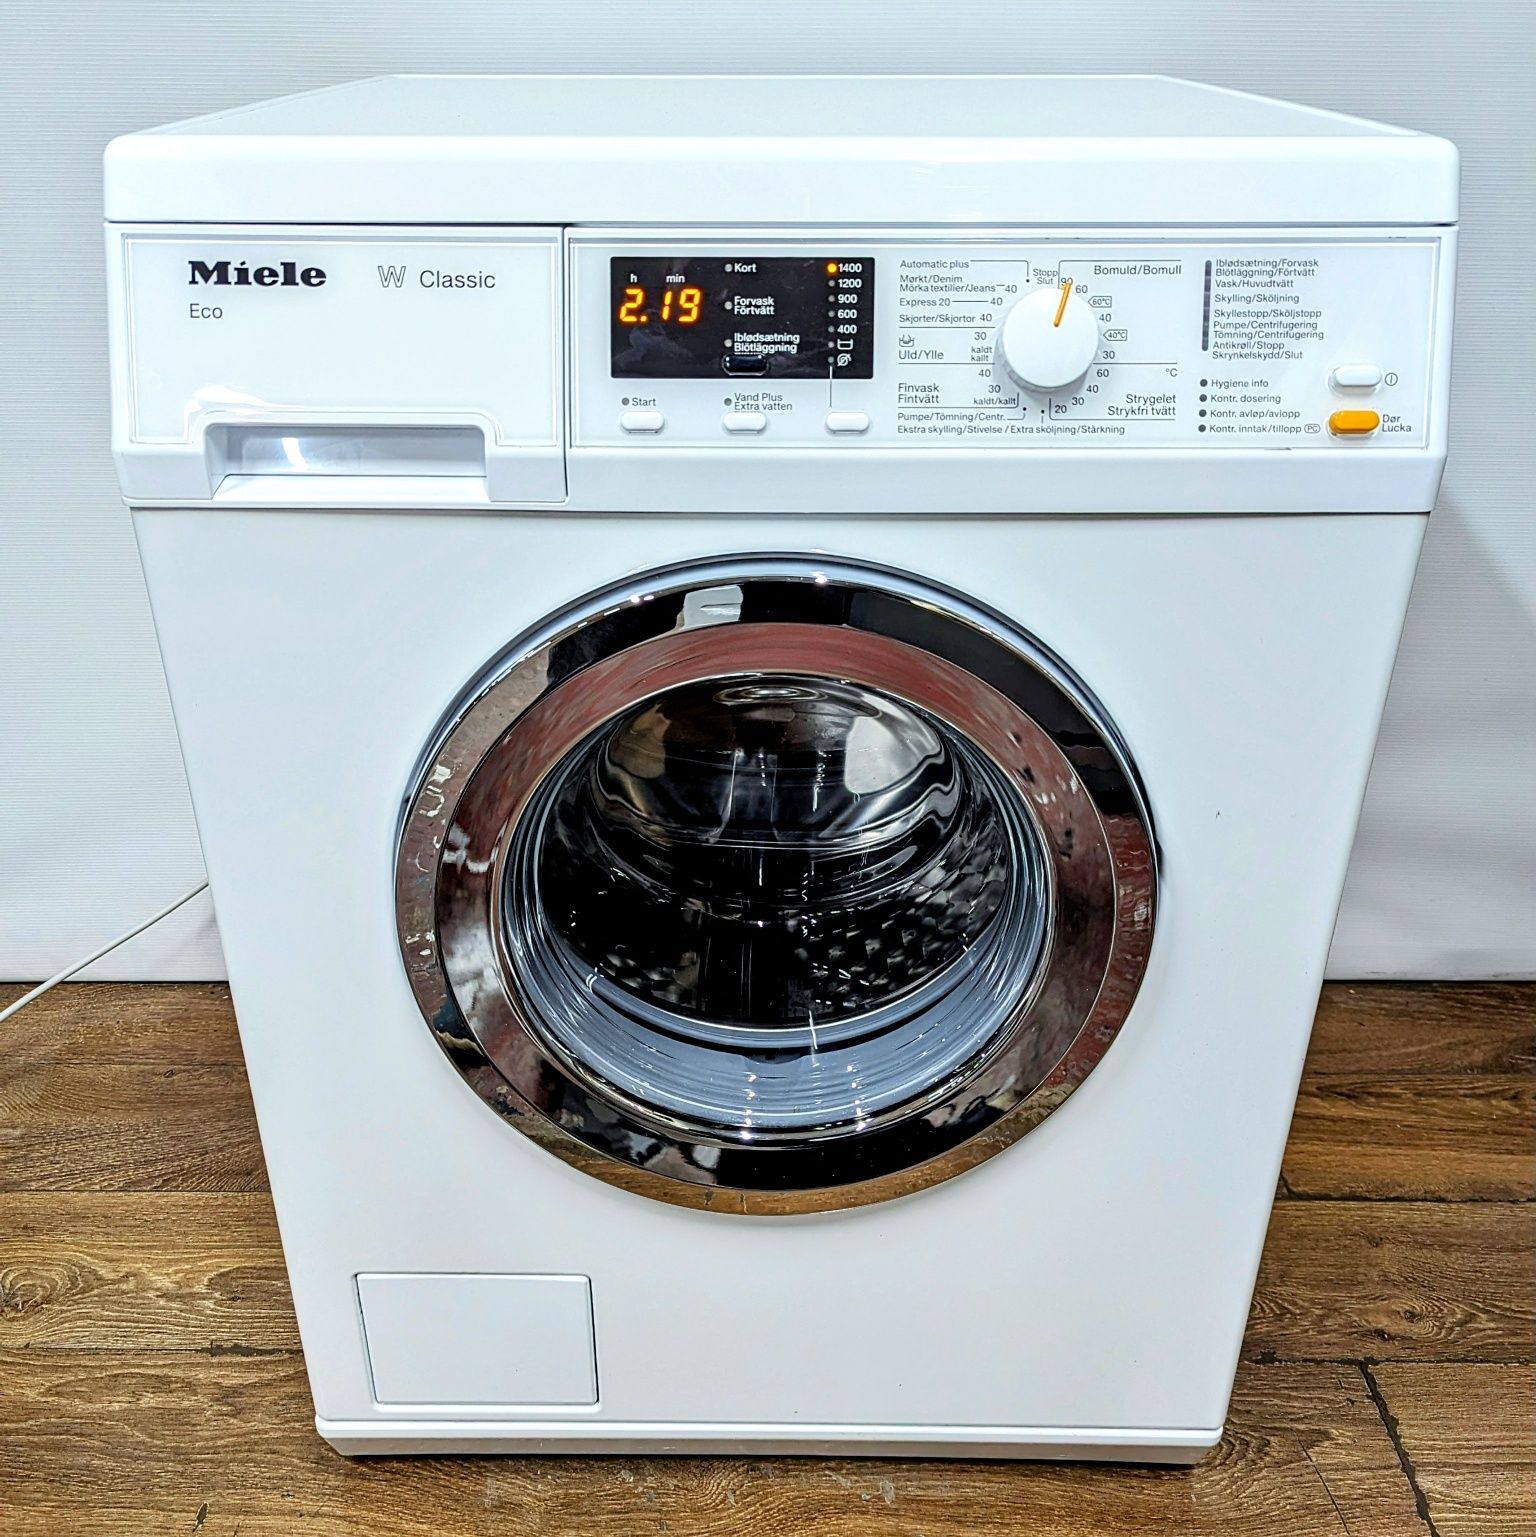 Преміальна пральна машина MIELE W Classic Eco / Гарантія / Стиральная